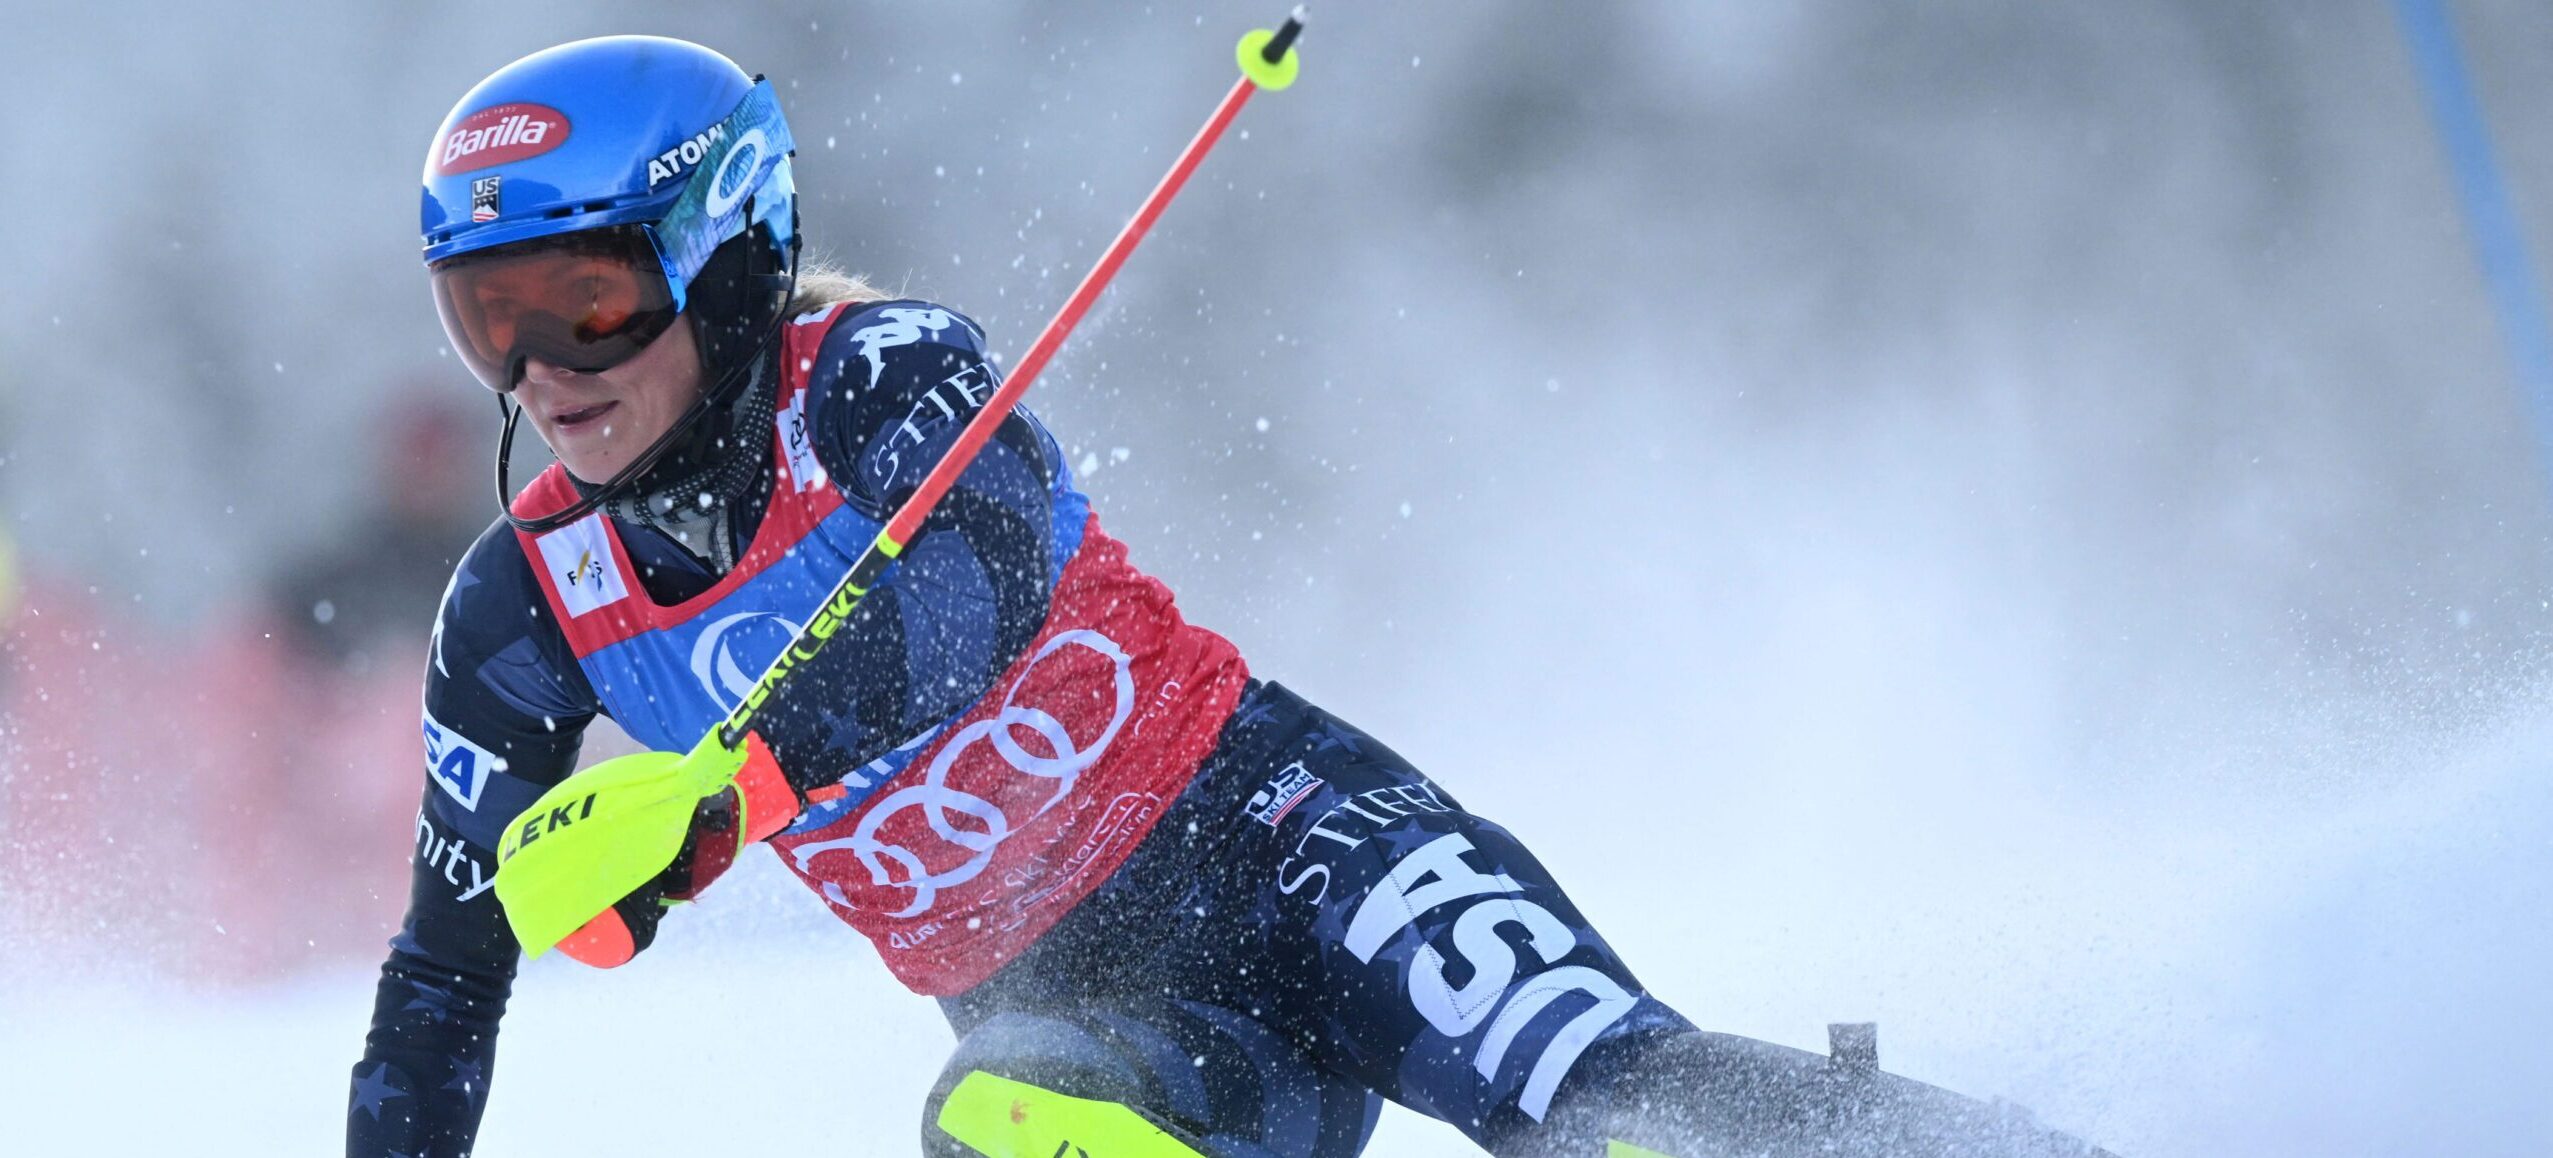 Qui est Mikaela Shiffrin, actuelle meilleure skieuse du monde ?